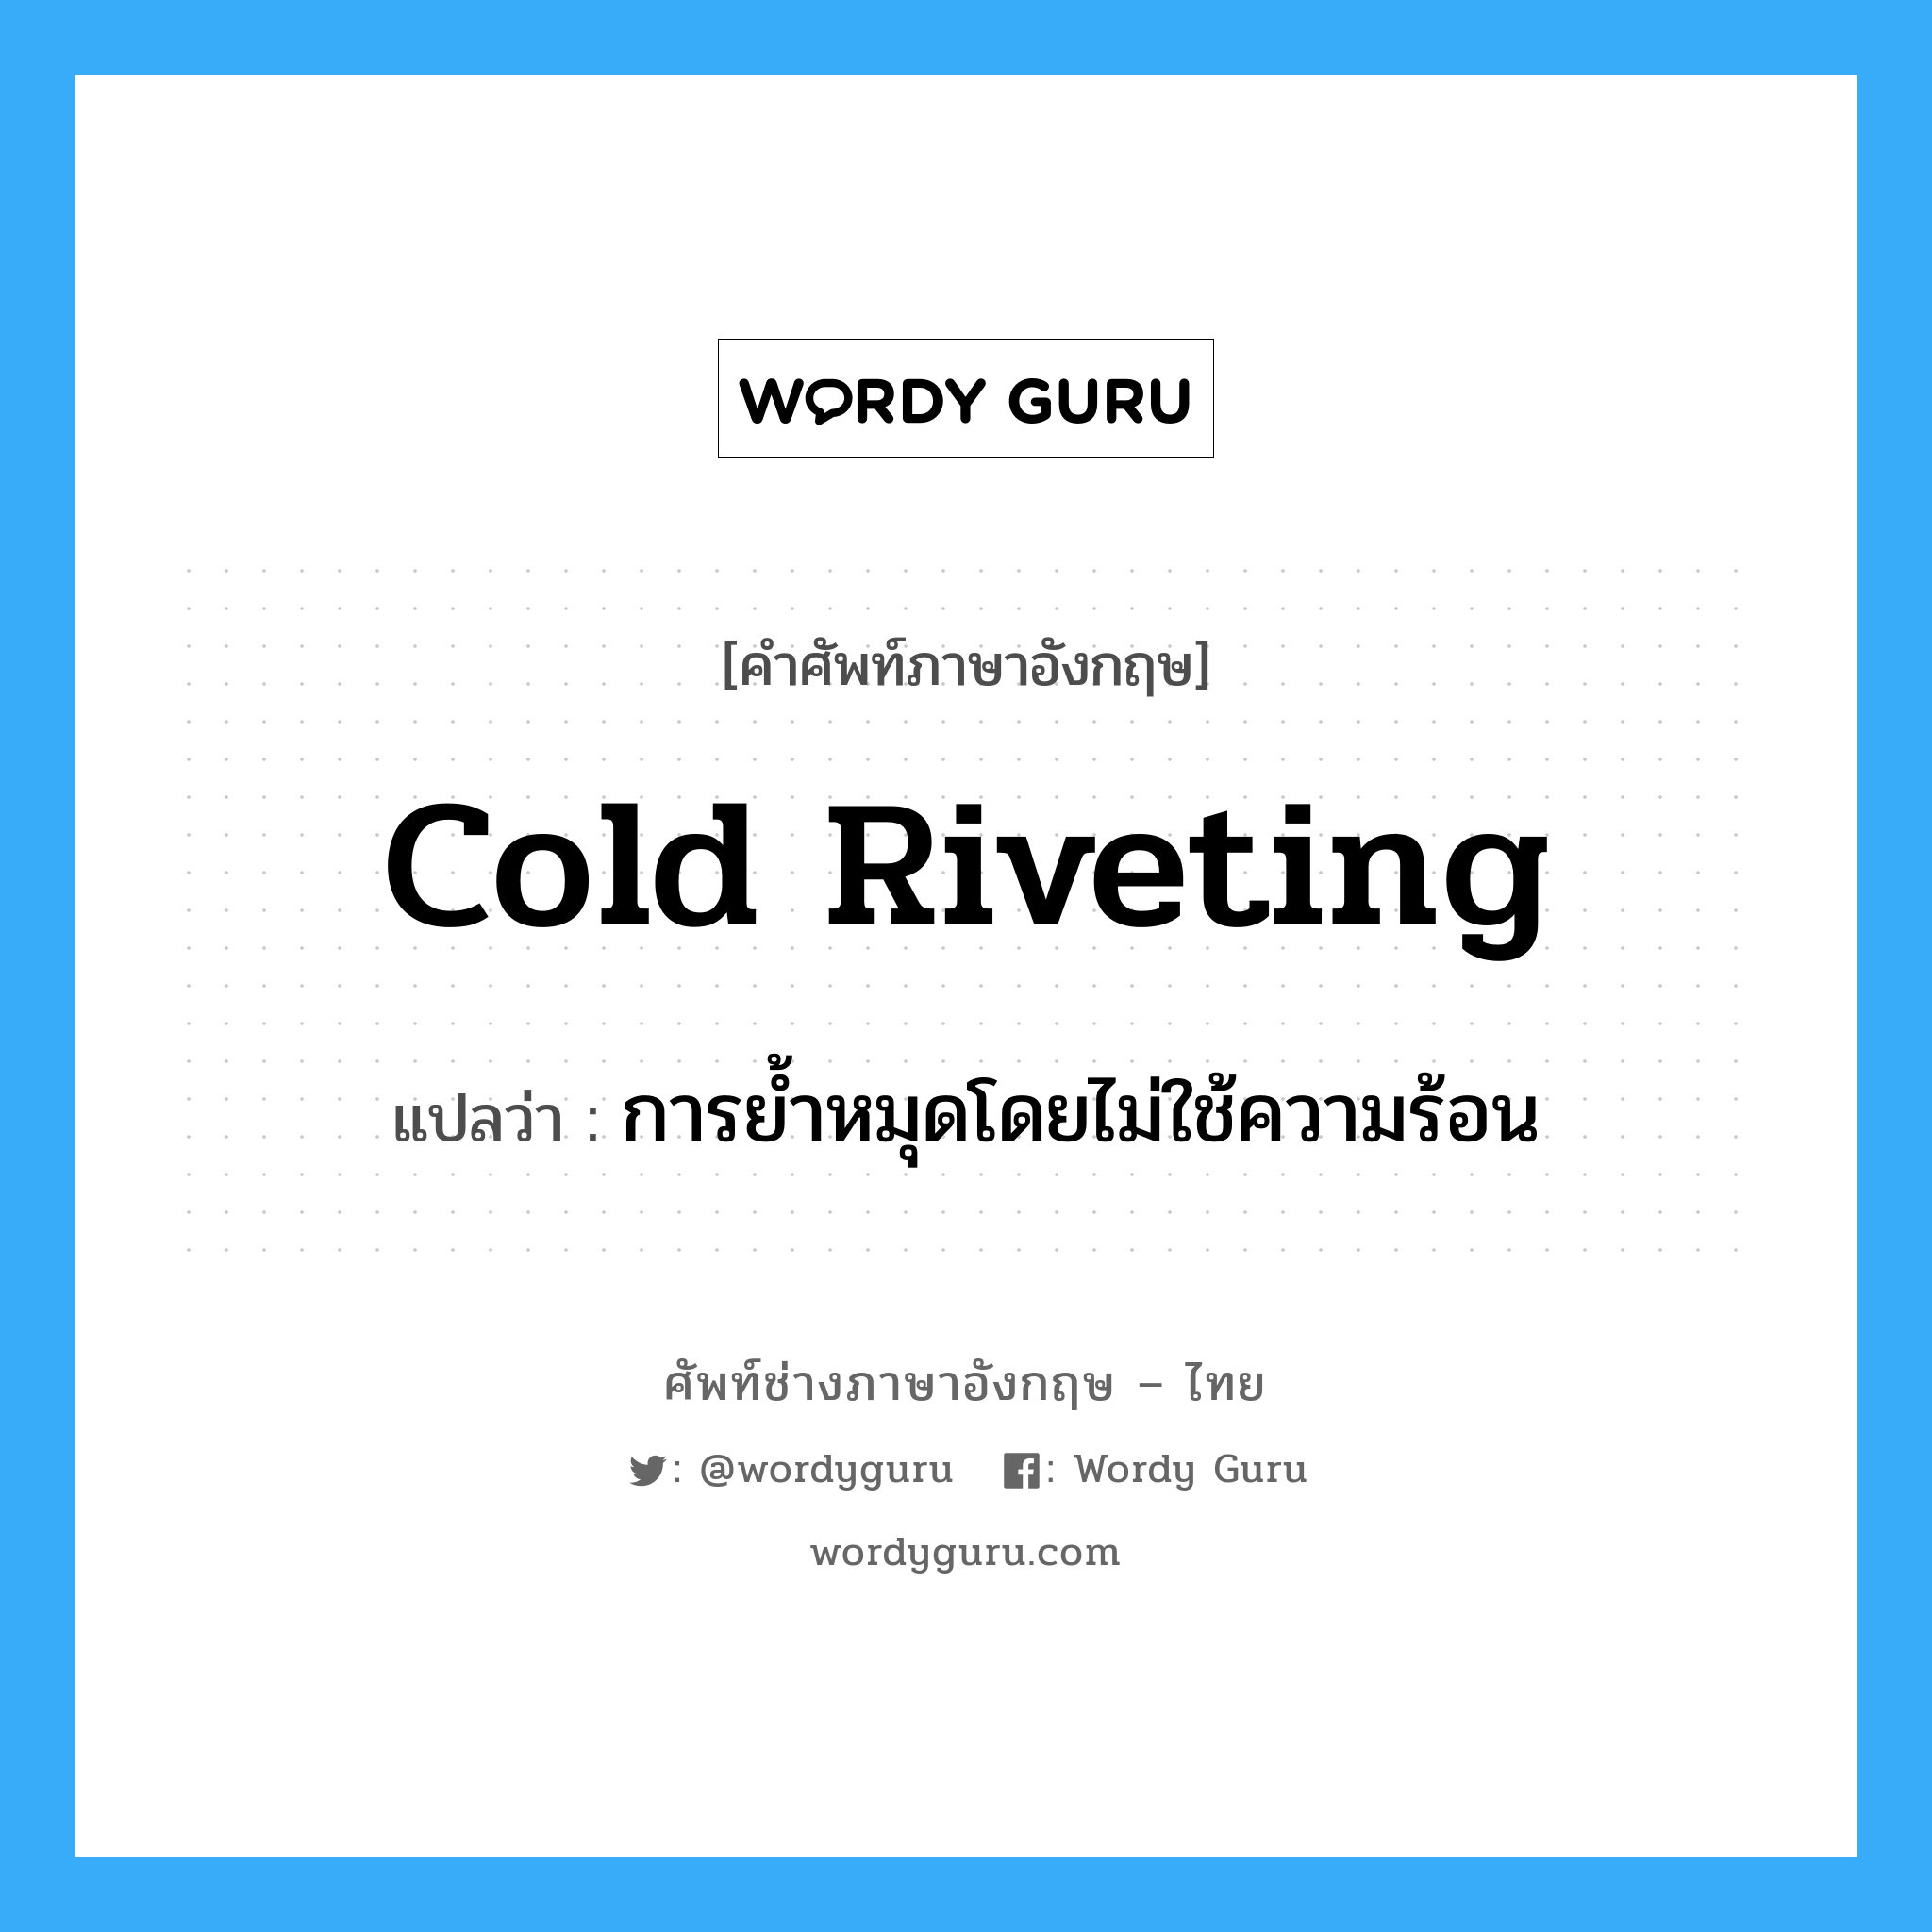 การย้ำหมุดโดยไม่ใช้ความร้อน ภาษาอังกฤษ?, คำศัพท์ช่างภาษาอังกฤษ - ไทย การย้ำหมุดโดยไม่ใช้ความร้อน คำศัพท์ภาษาอังกฤษ การย้ำหมุดโดยไม่ใช้ความร้อน แปลว่า cold riveting